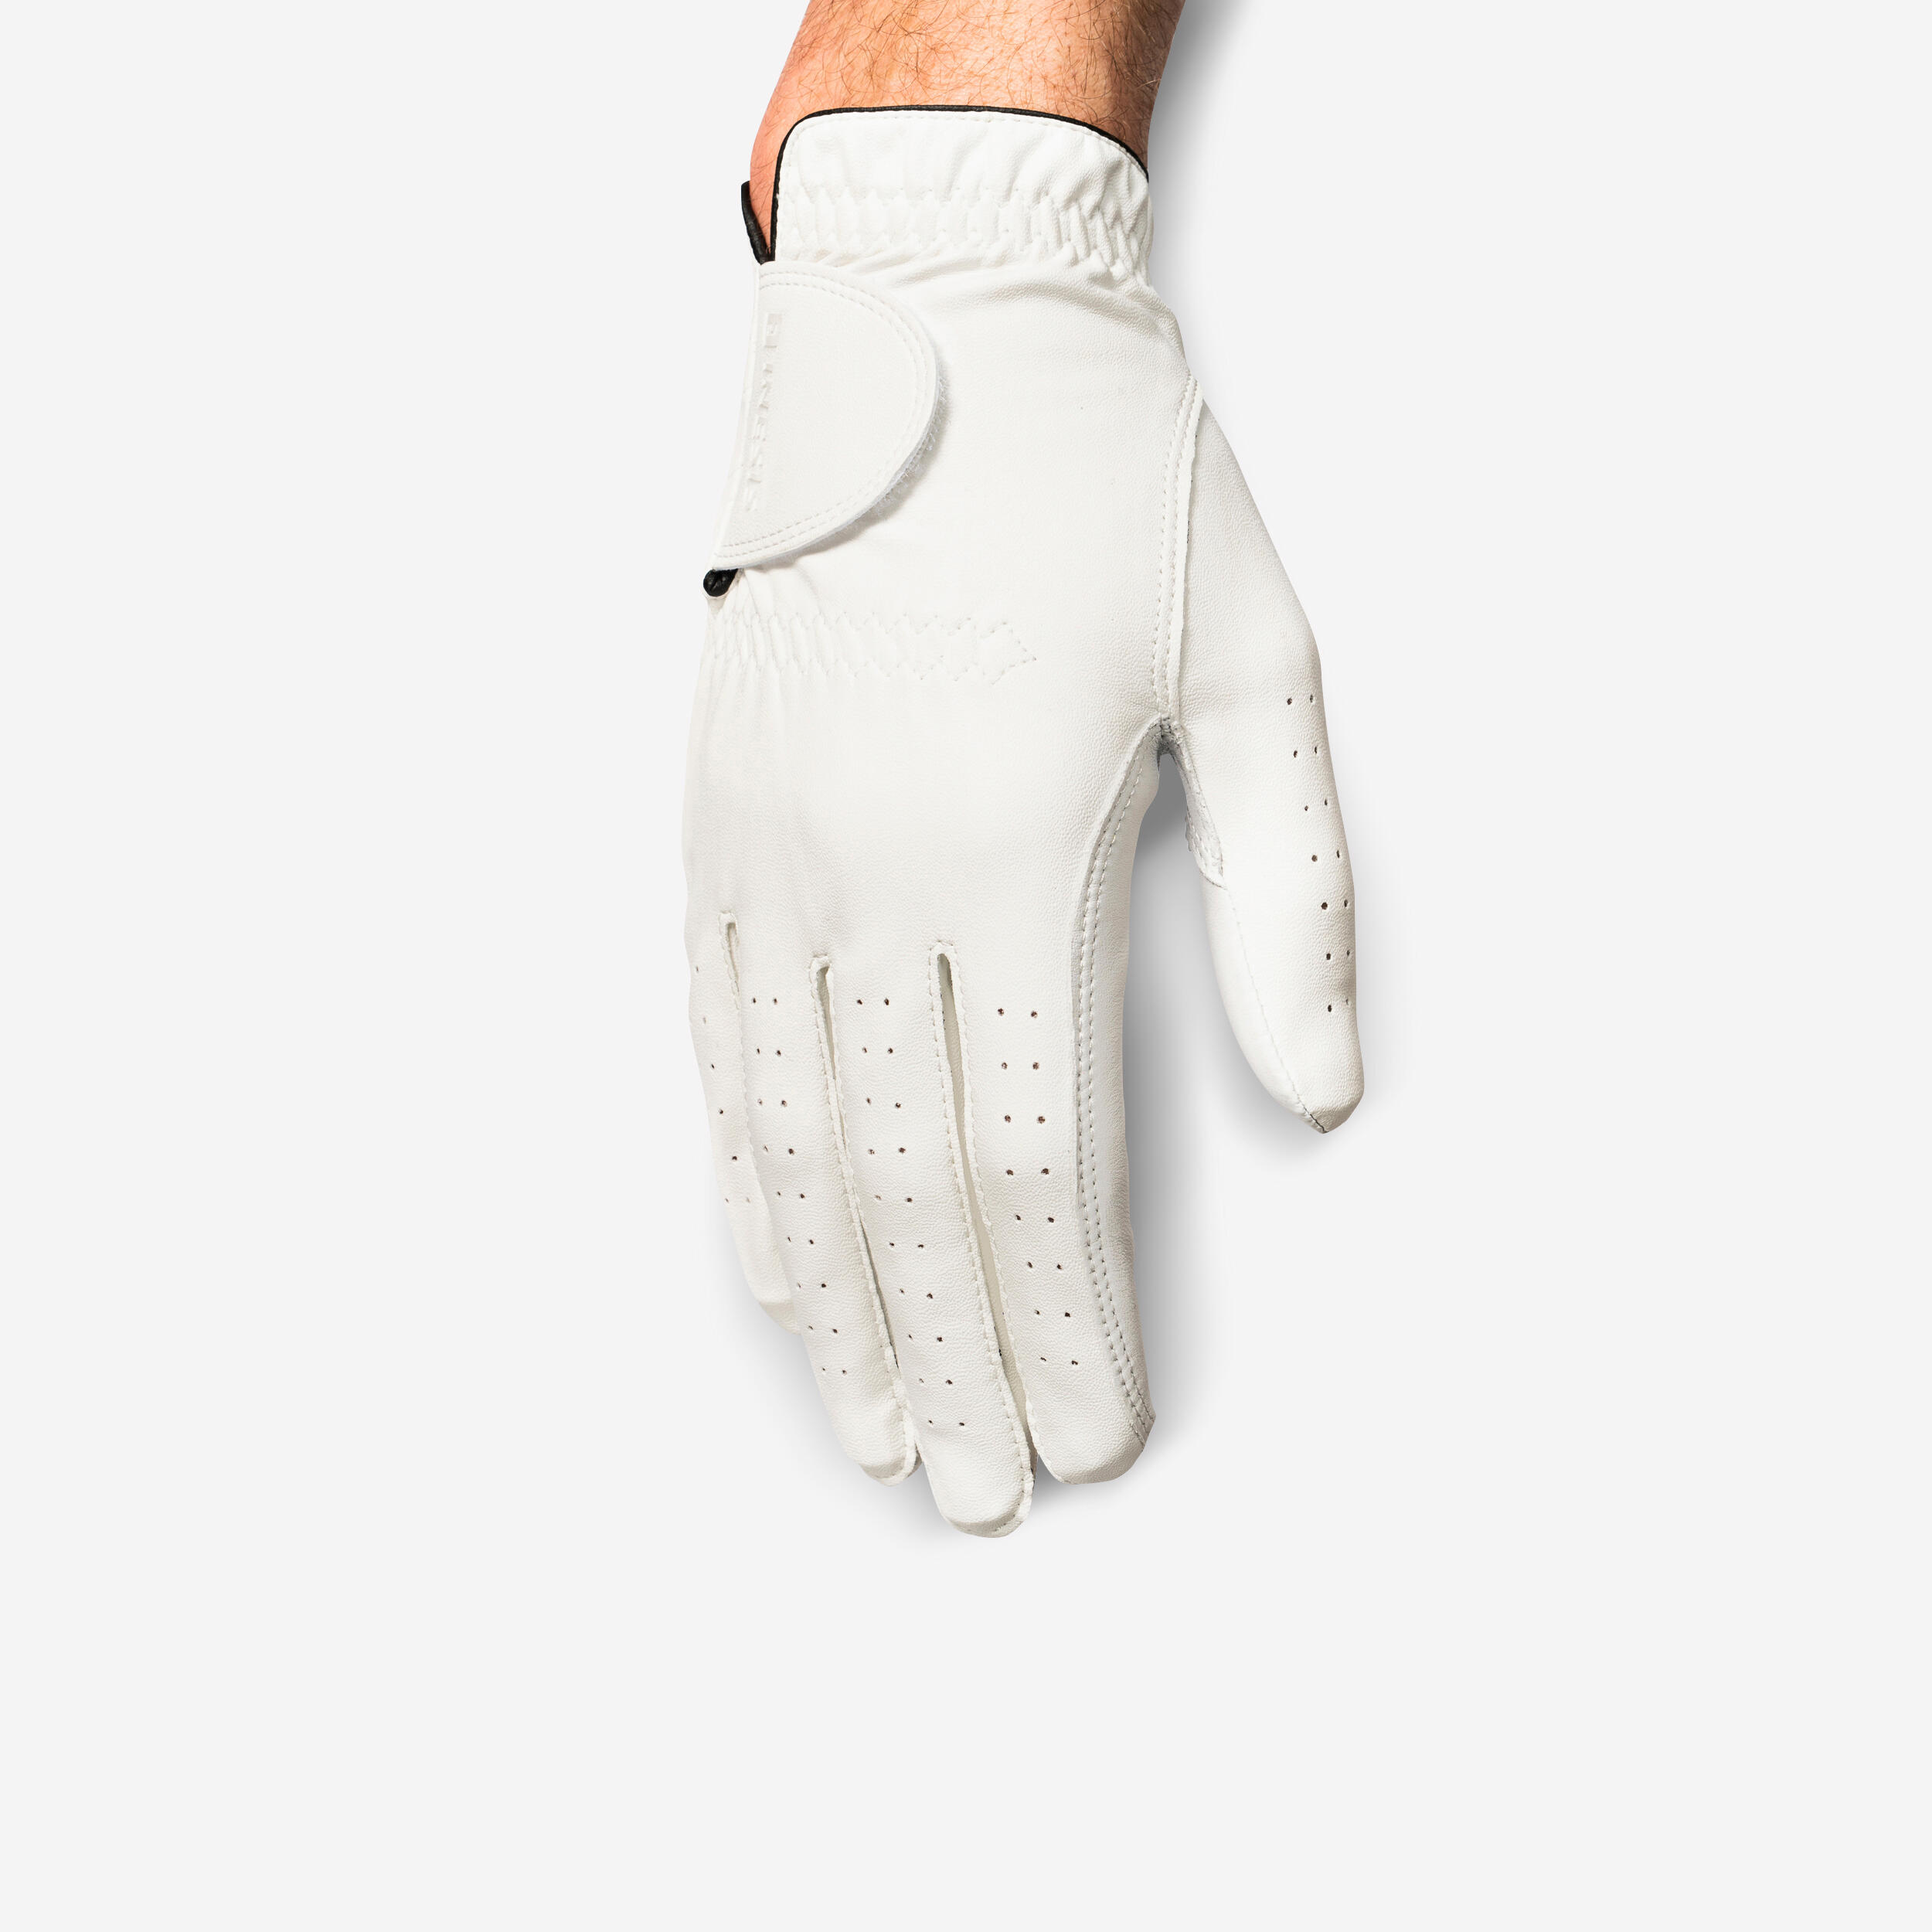 Men’s LH Golf Glove - Soft 500 White